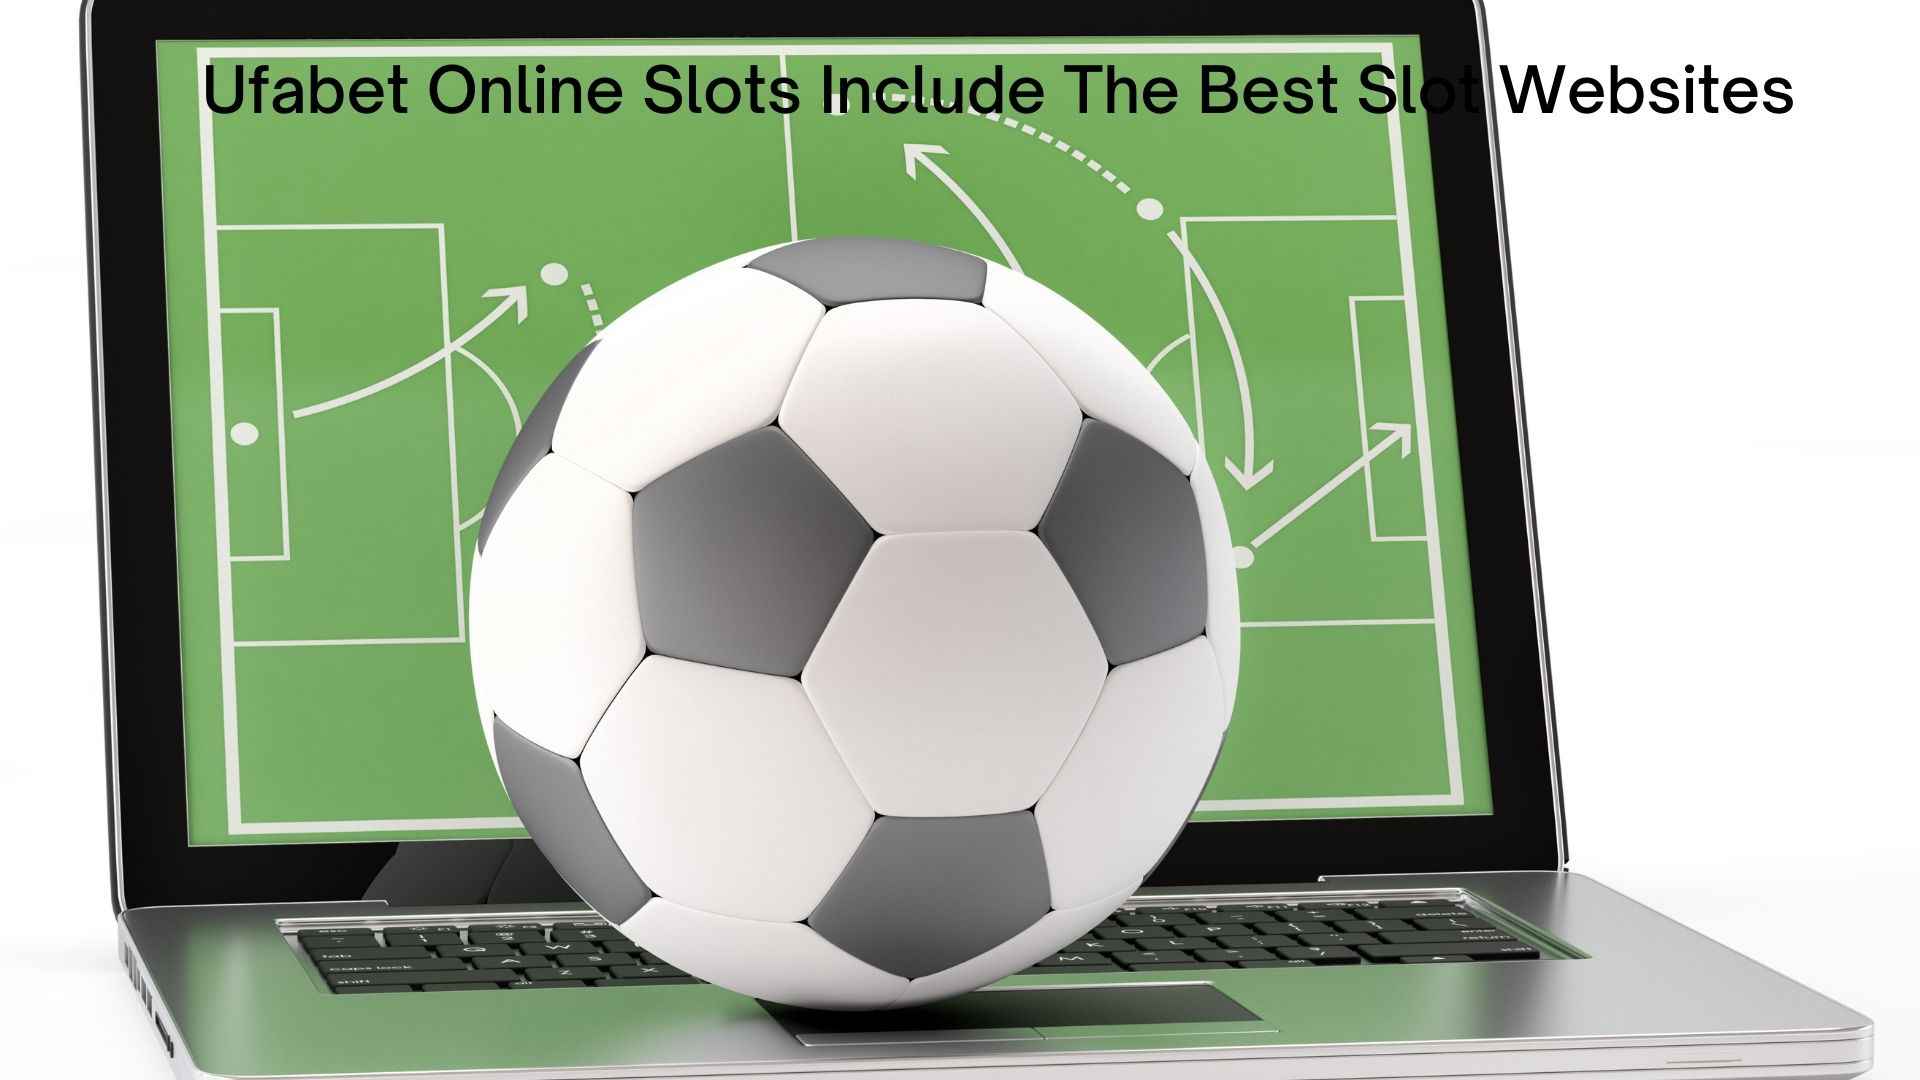 Ufabet Online Slots Include The Best Slot Websites